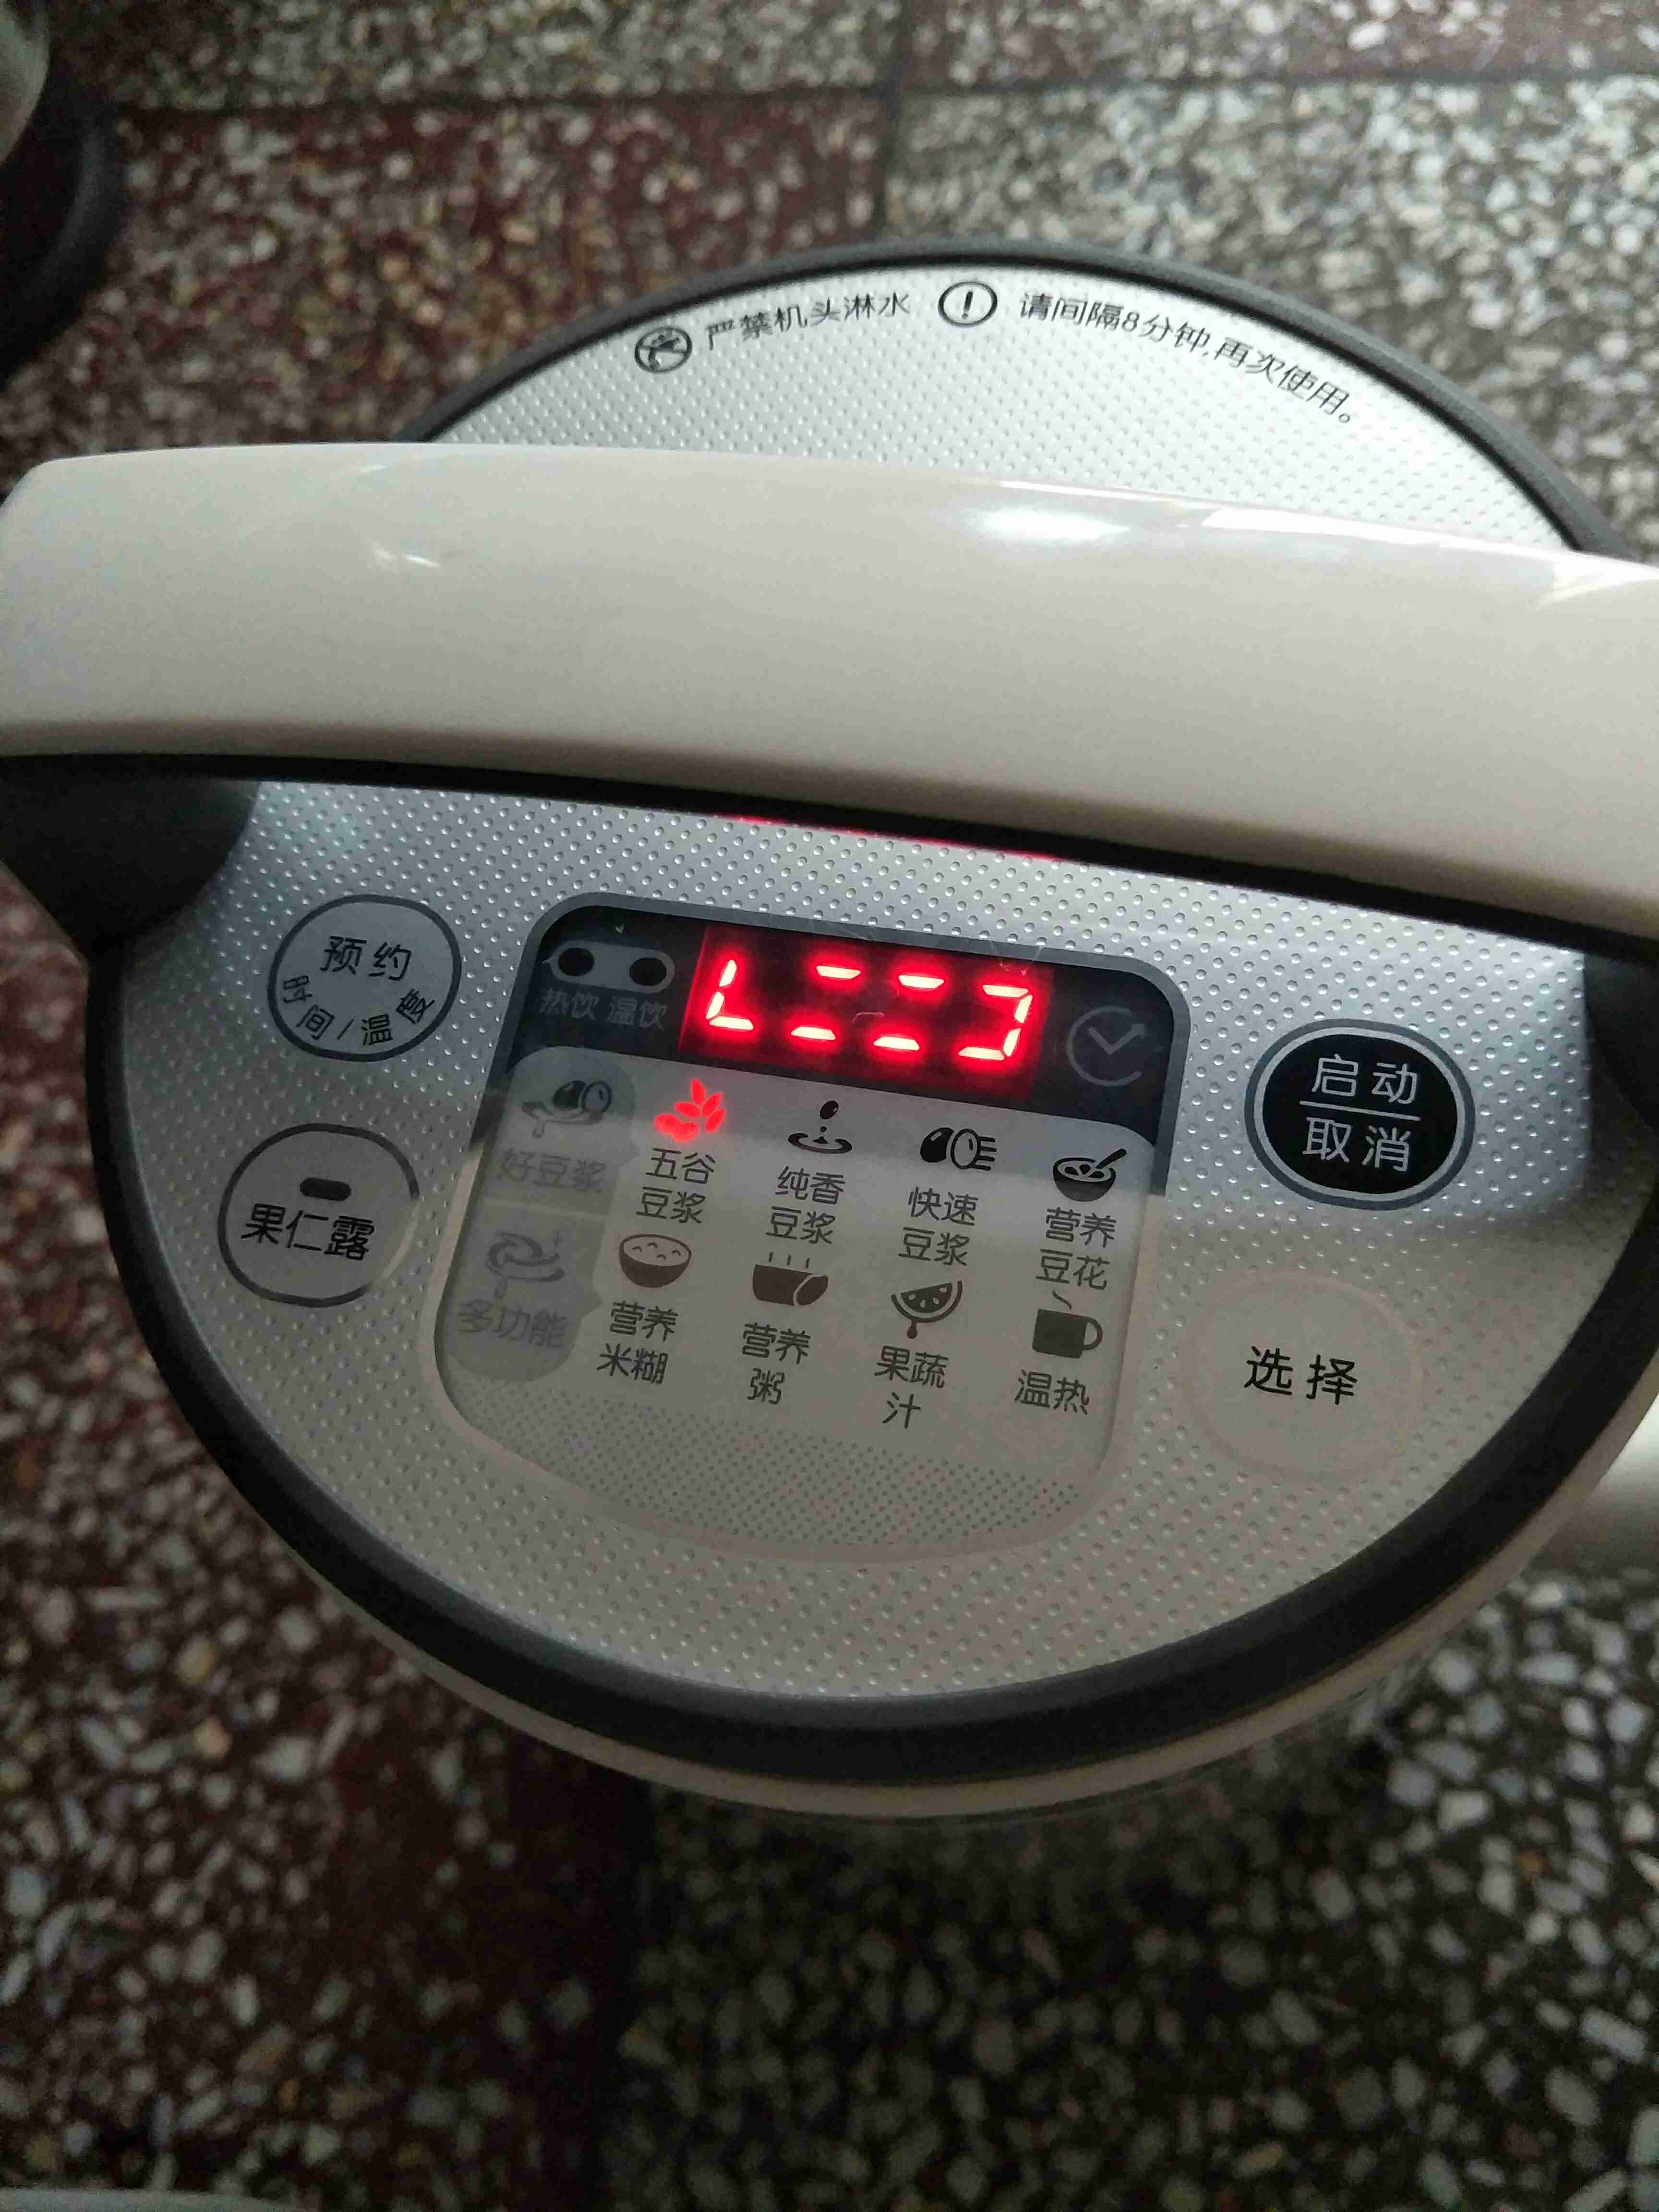 九阳豆浆机，功能选择好之后，按启动按钮无法启动，什么原因？怎么处理？重庆市沙坪坝区哪里可以维修？网购的，发票没有了。